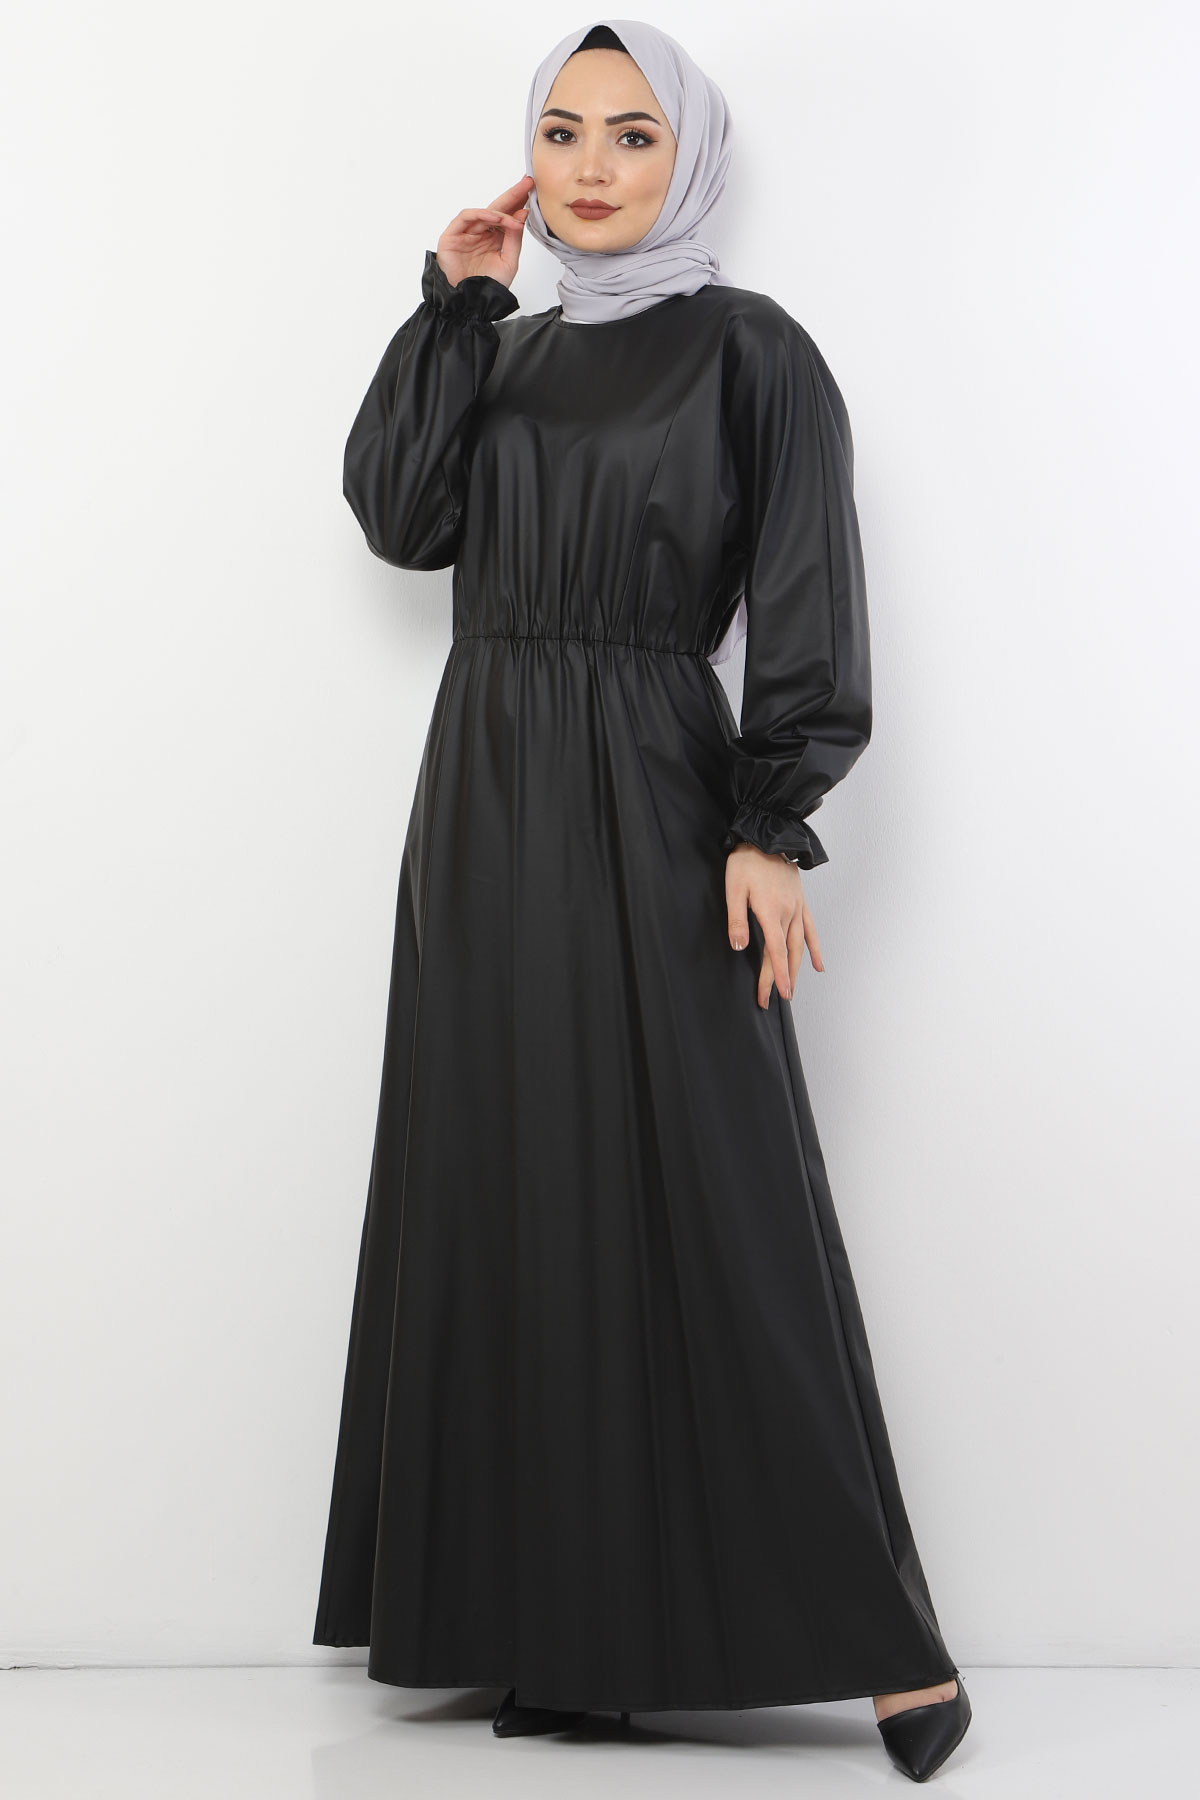 Tesettür Dünyası - فستان جلد بخصر مطاطي TSD9069لون أسود